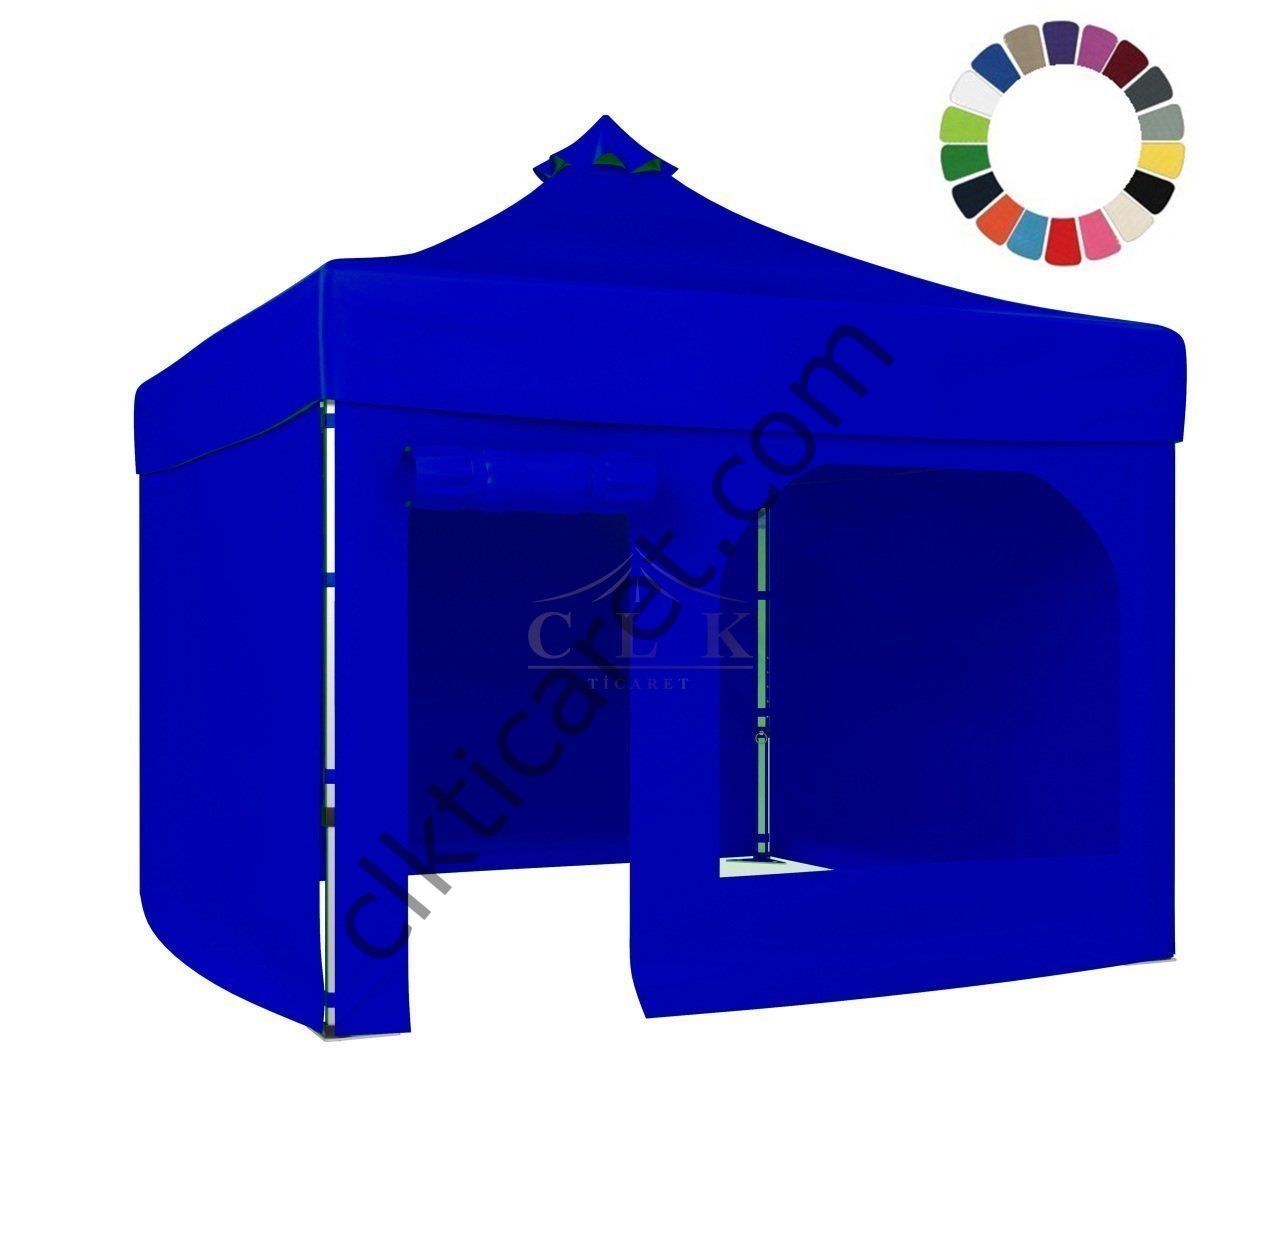 CLK 3x3 40 mm Katlanabilir Tente Gazebo Çadır Gazebo Çadır 3 Yan Kapalı 1 Yan Kapı ve Pencereli